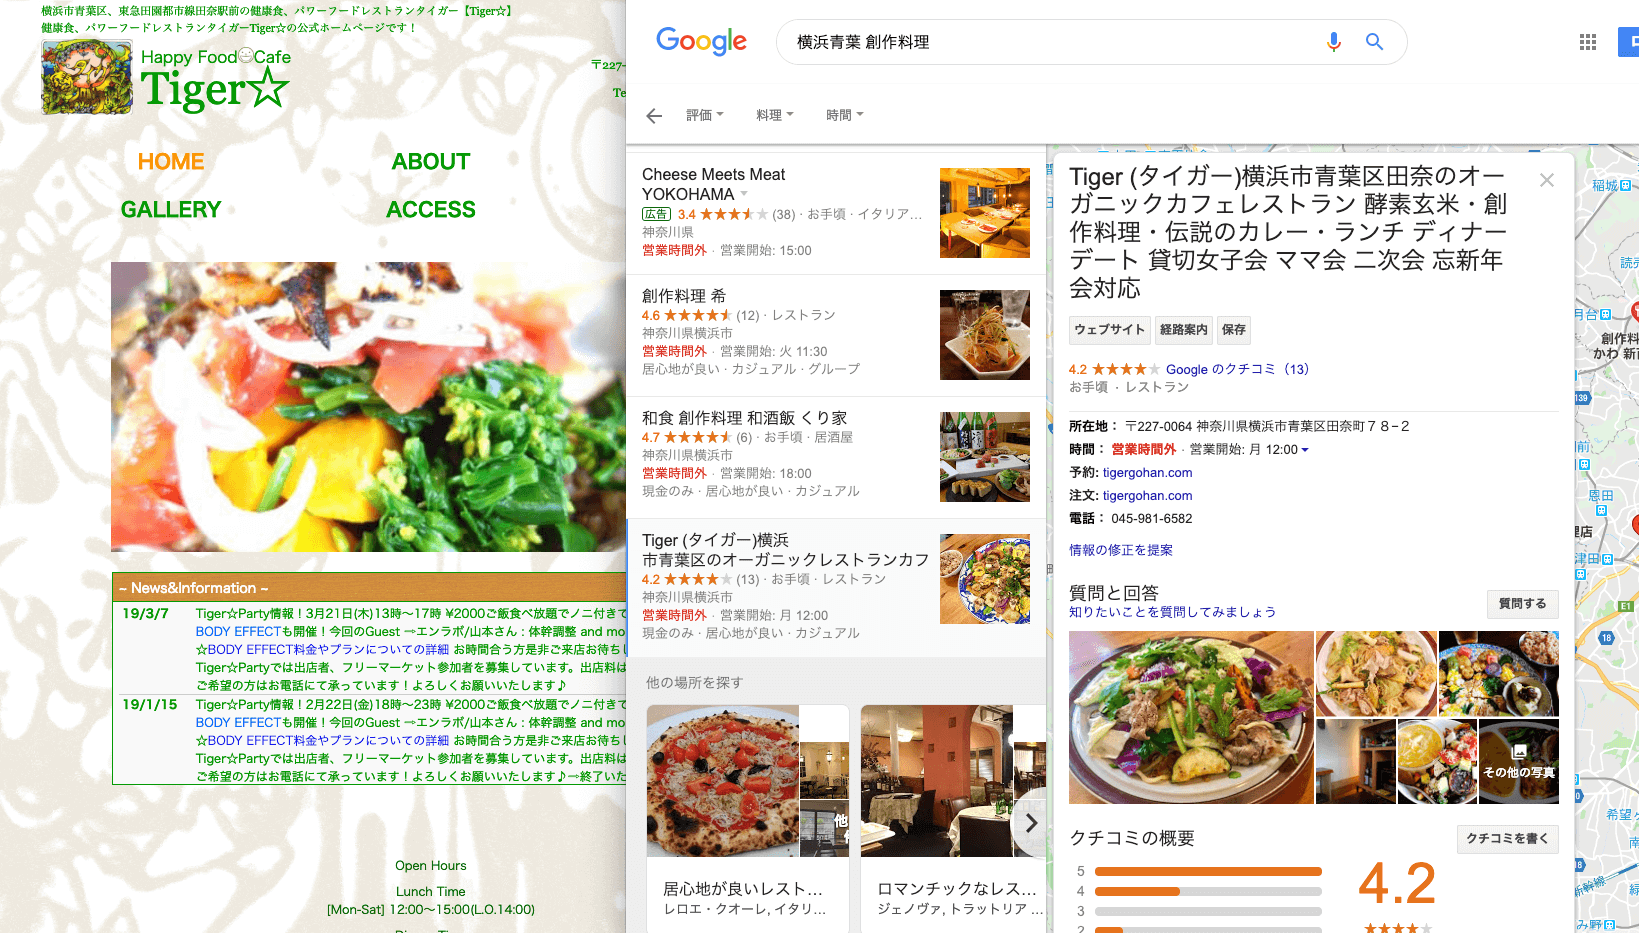 制作実績｜MEO対策・神奈川県 Happy Food Cafe Tiger様